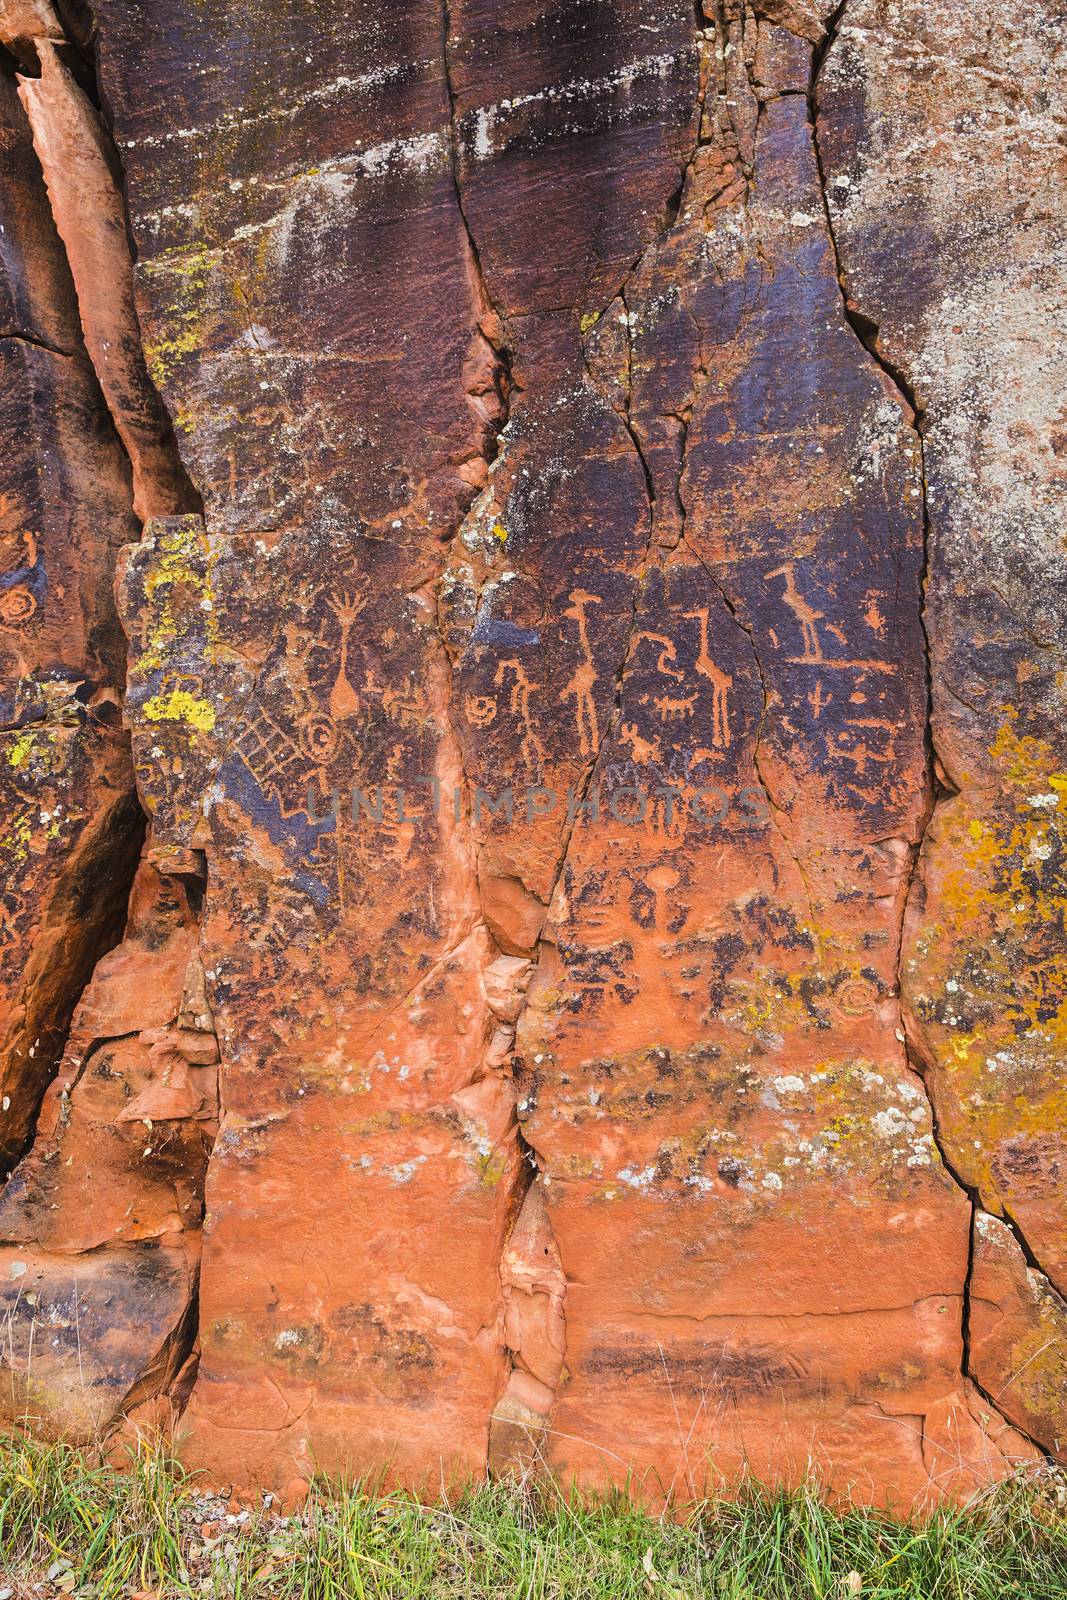 Large rock panel with many symbolic petroglyphs